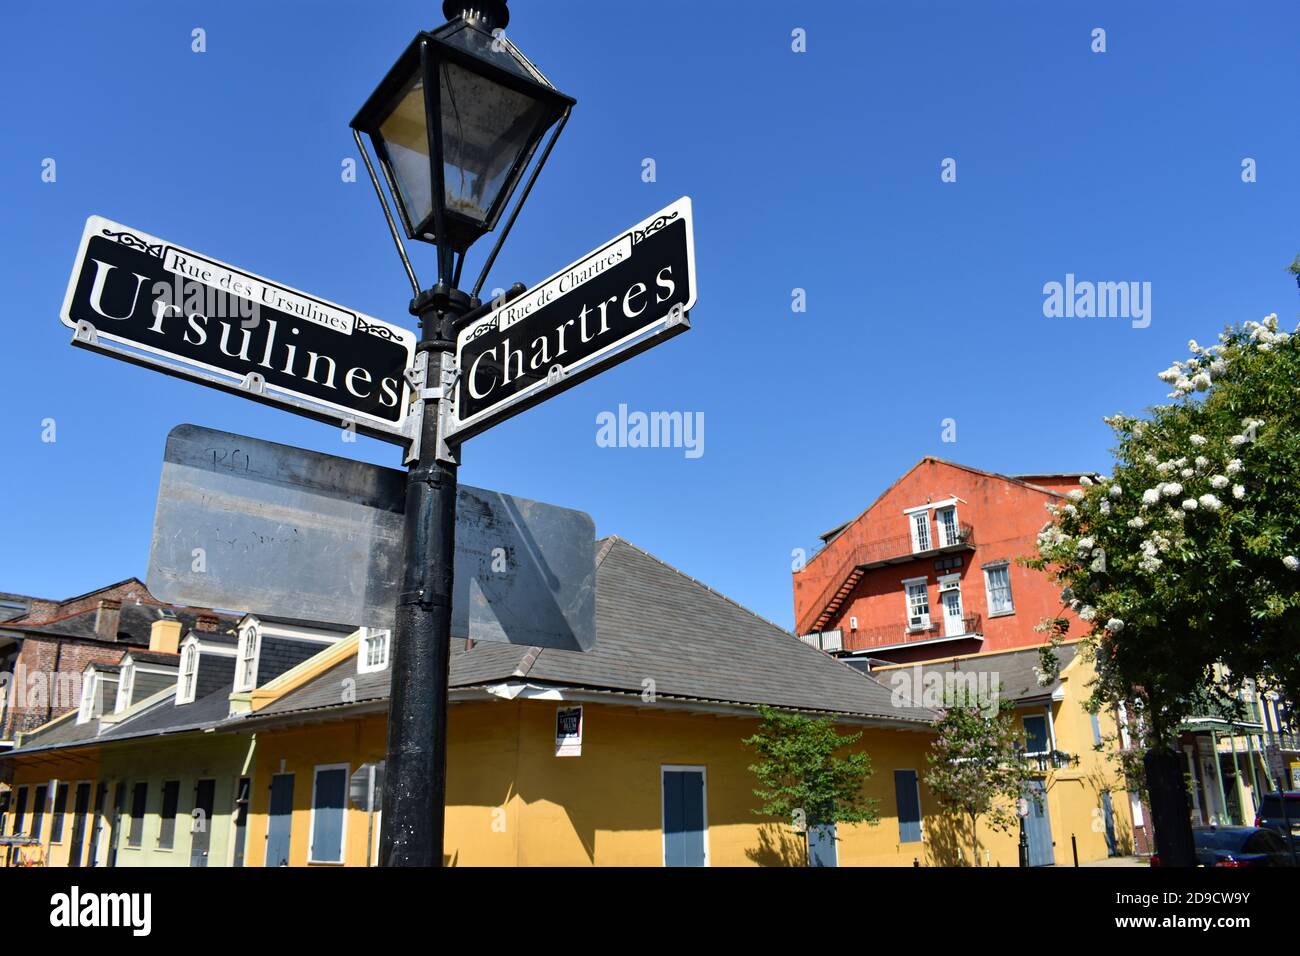 Un tradizionale cartello stradale con una lampada in cima indica la strada per Ursulines Street e Chartres Street nello storico quartiere francese di New Orleans. Foto Stock